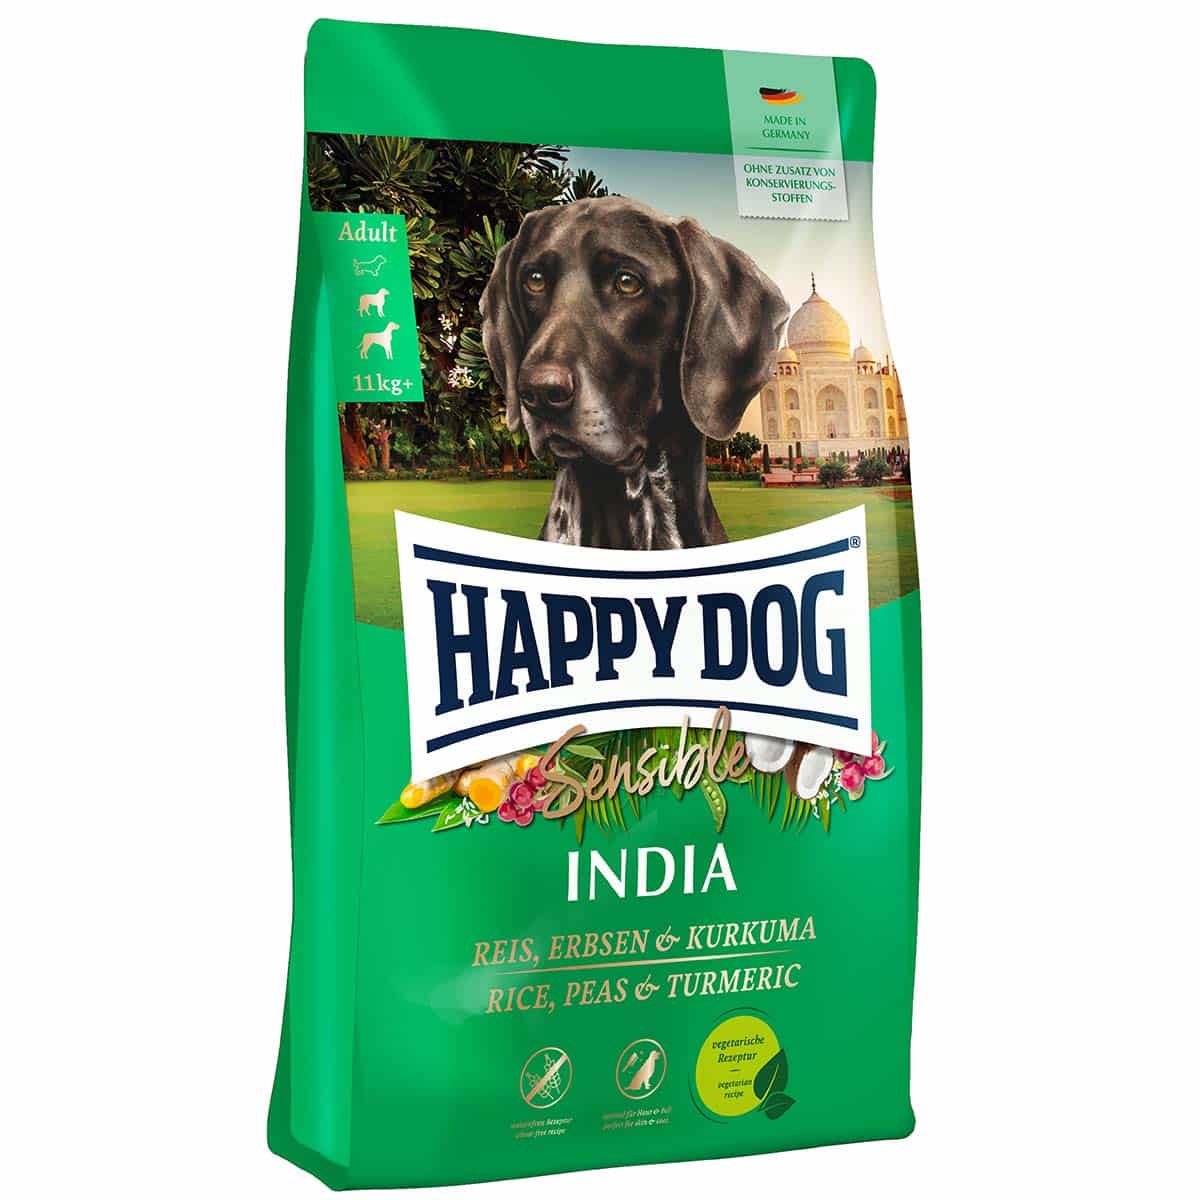 Happy Dog Supreme Sensible India 2x10kg